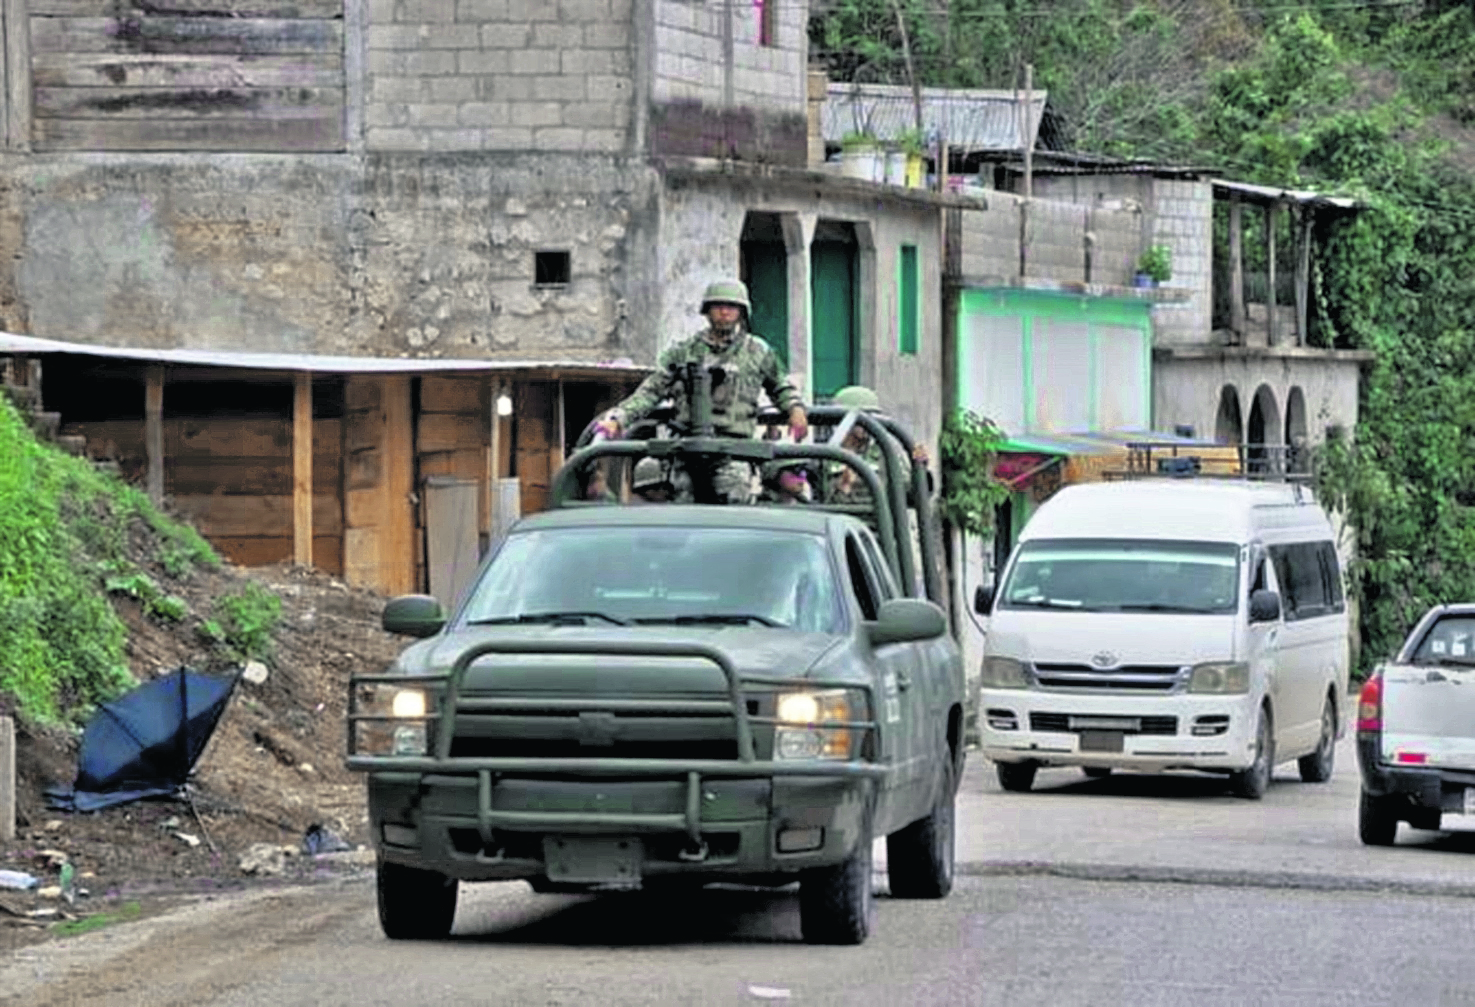 Mientras en Guatemala han ocurrido incidentes armados en municipios de San Marcos, Huehuetenango y Petén, en el estado de Chiapas, México, se libra una guerra de cárteles de la droga.

Foto Prensa Libre: Cortesía Ernesto Muñoz/El Sol de México